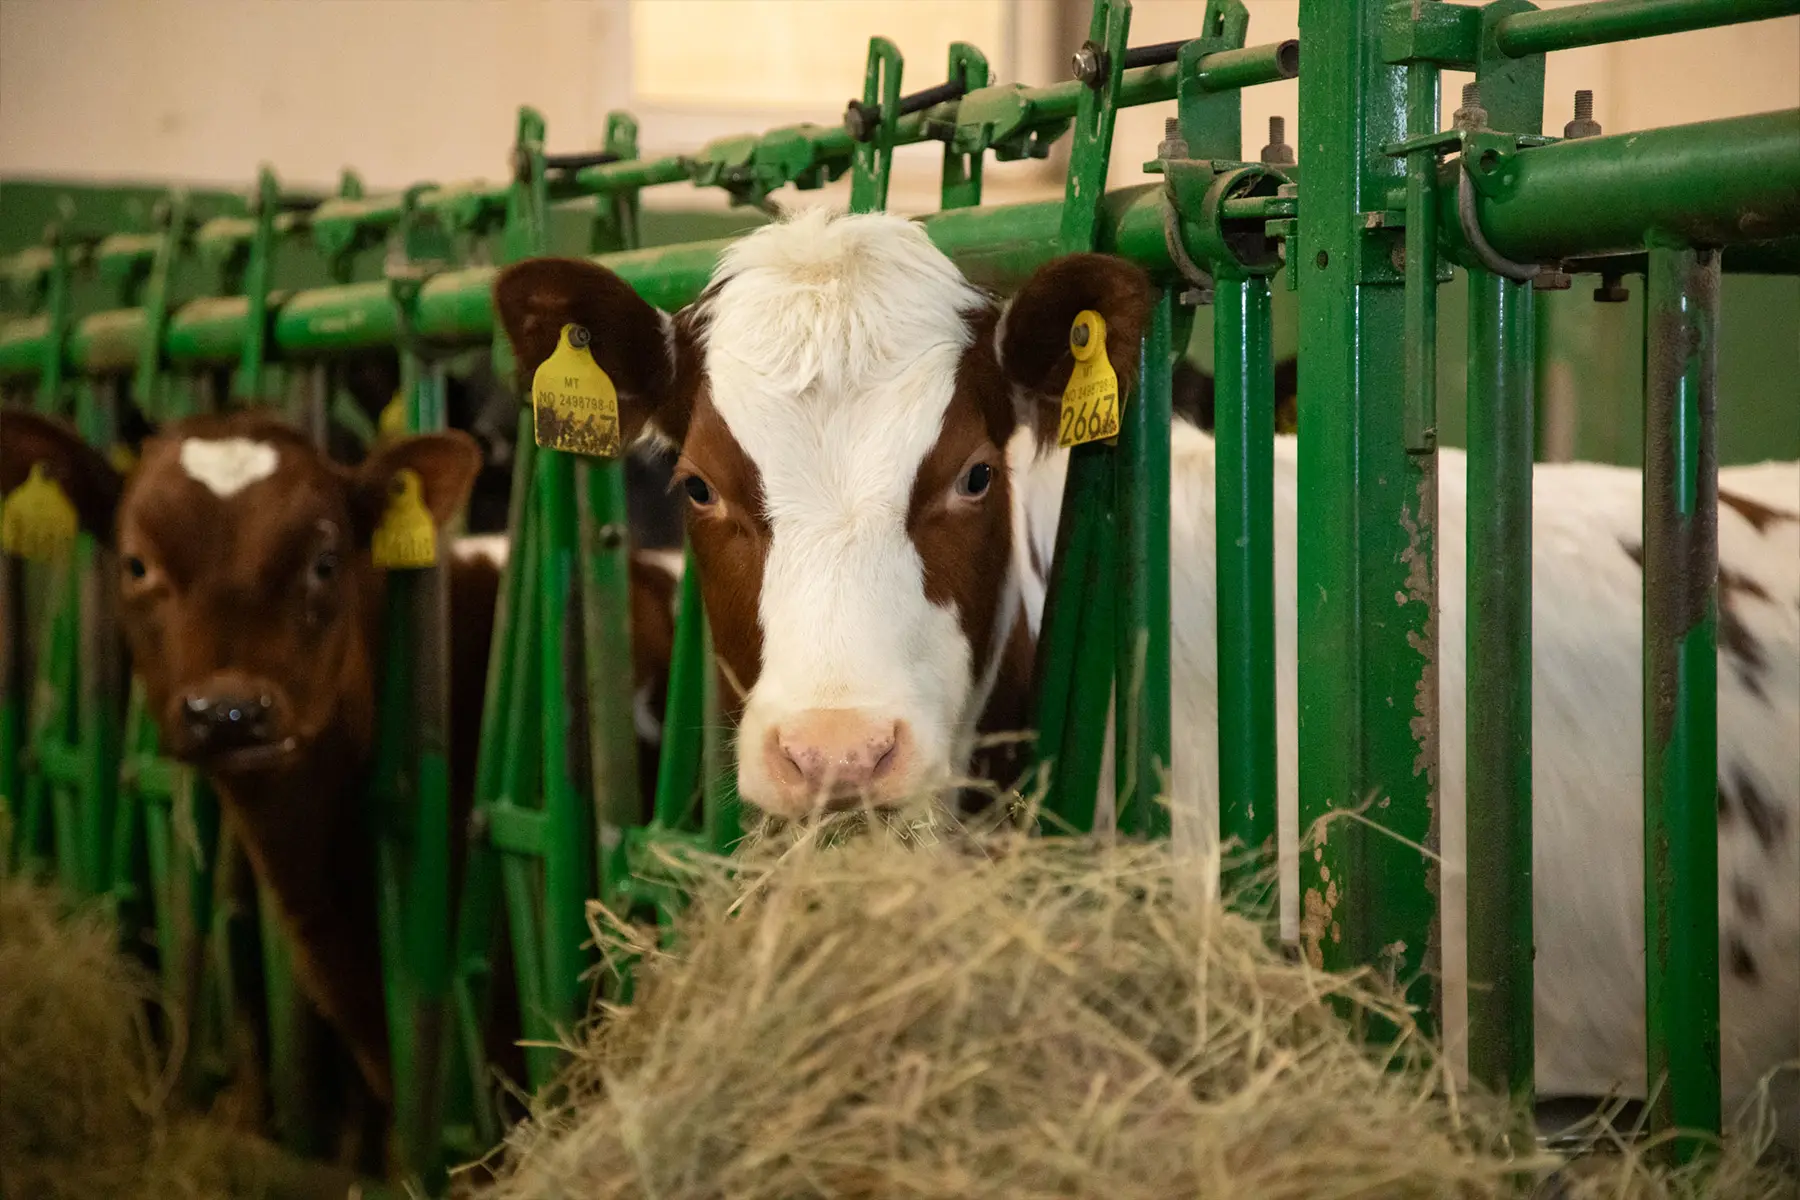 Kyr med øremerker som spiser høy i en låve, står i individuelle grønne fôringsbåser overvåket av sikkerhet på stedet.